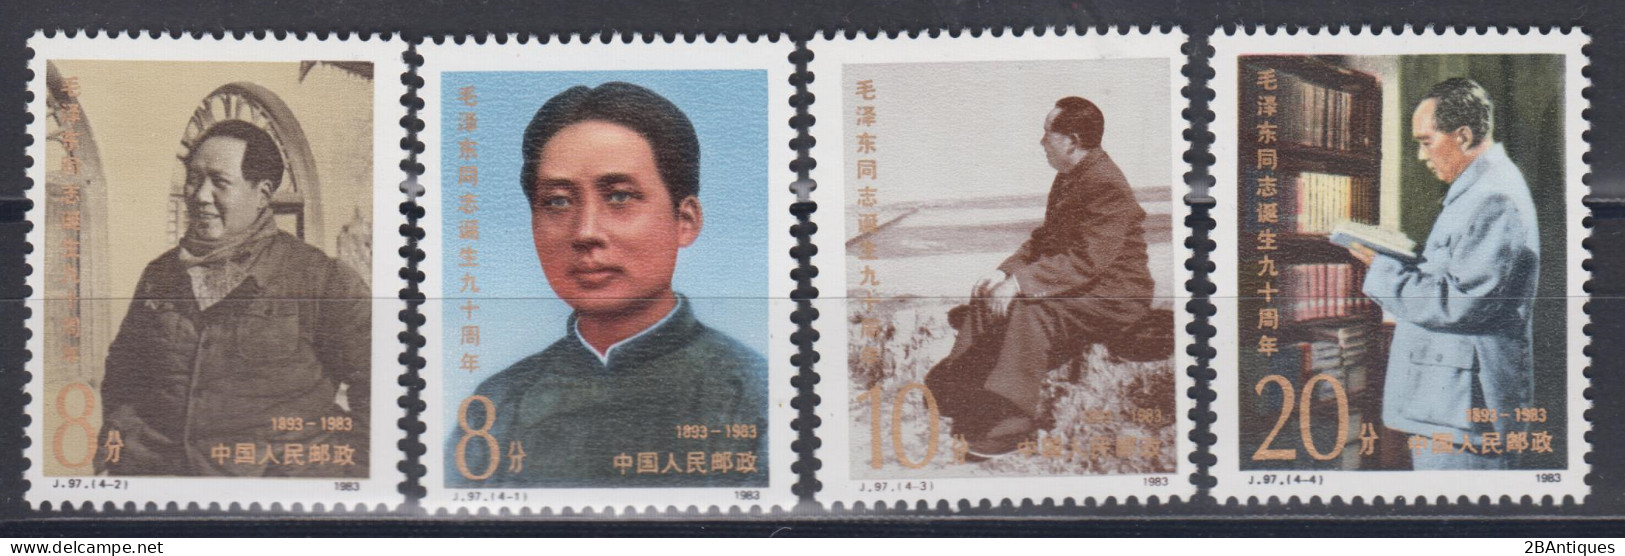 PR CHINA 1983 - The 90th Anniversary Of The Birth Of Mao Tse-tung MNH** OG XF - Ongebruikt